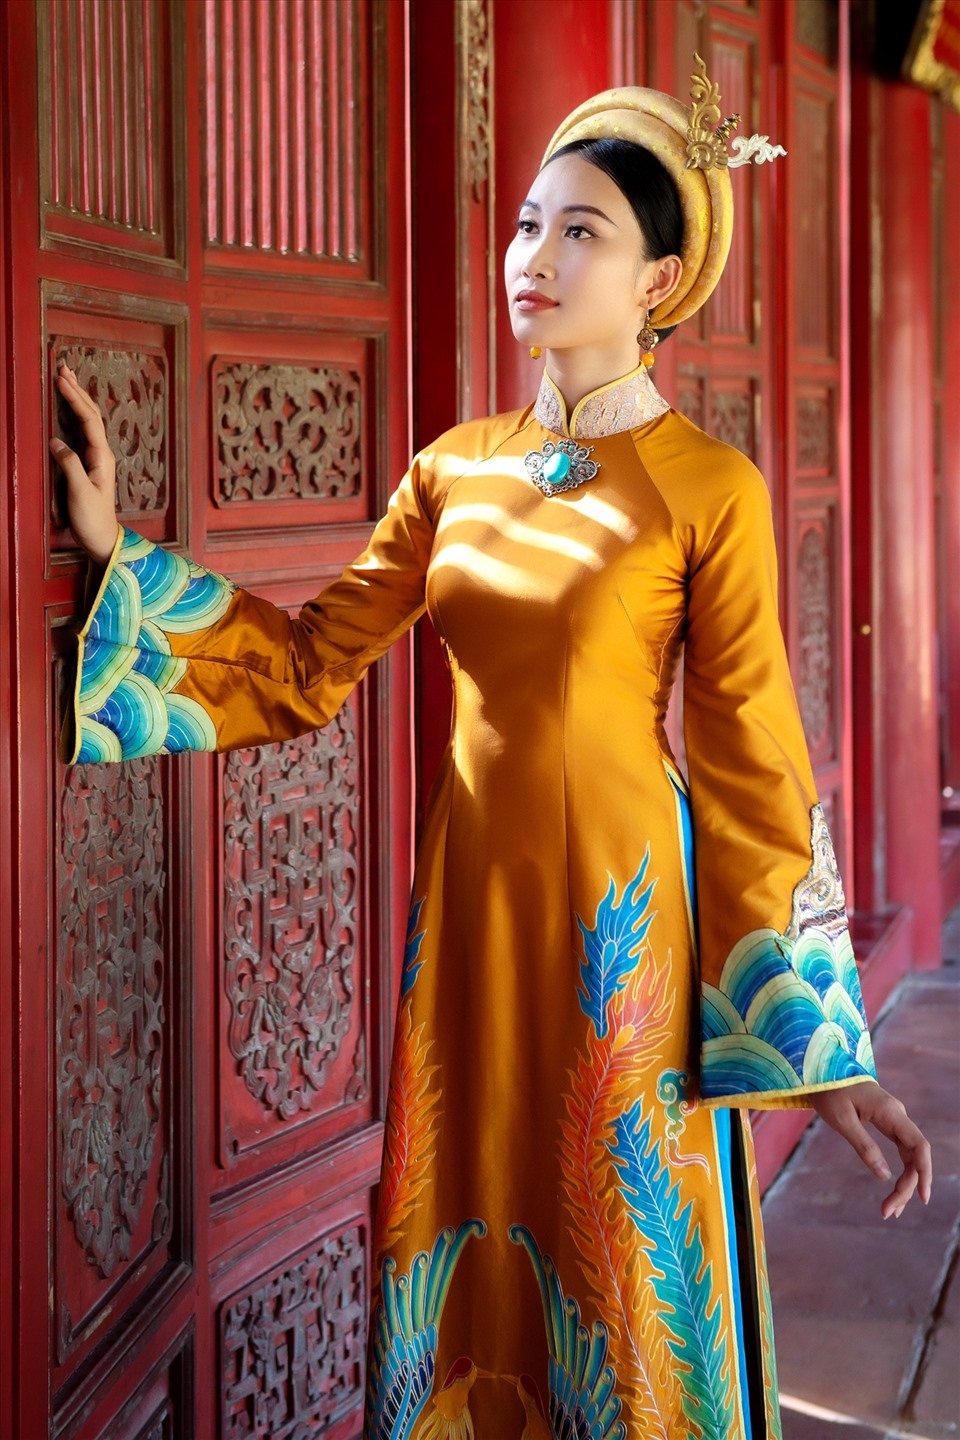 Mới đây, Hoa khôi  Đoàn Hồng Trang vừa có chuyến tham quan Huế và chụp ảnh thời trang trong khung cảnh cổ kính, trầm mặc của cố đô.